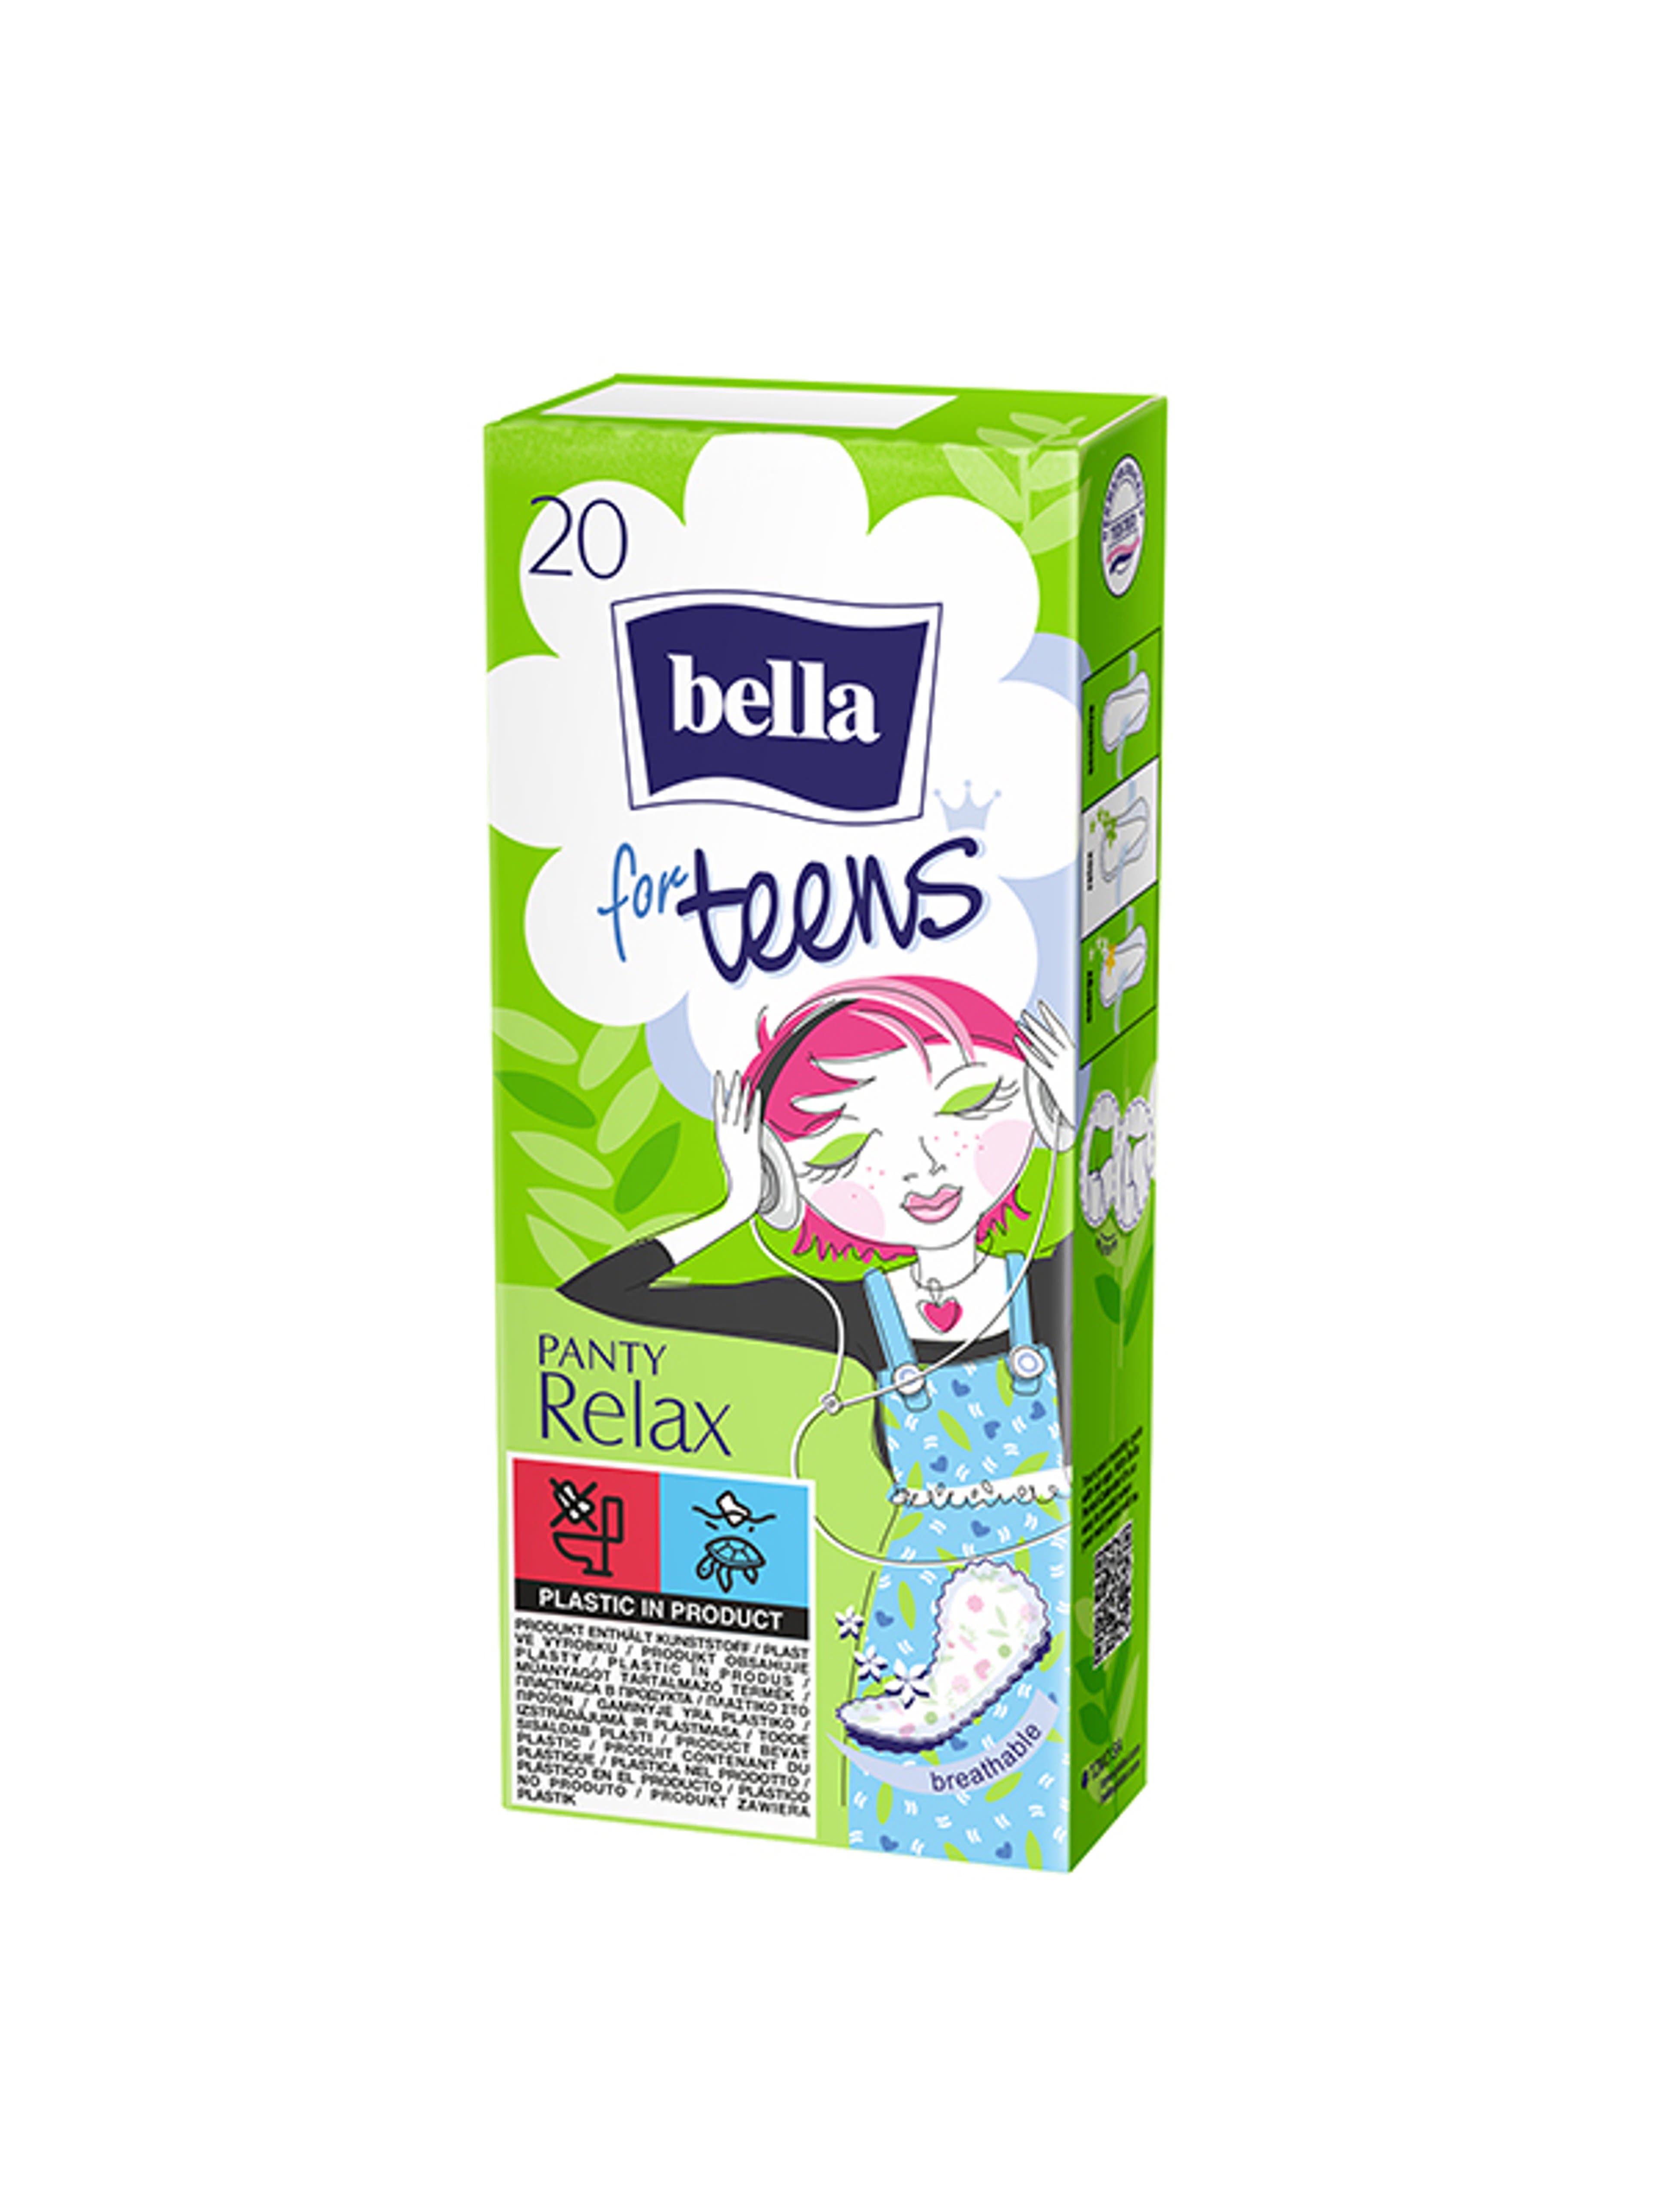 Bella for Teens Relax illatosított tisztasági betét - 20 db-1